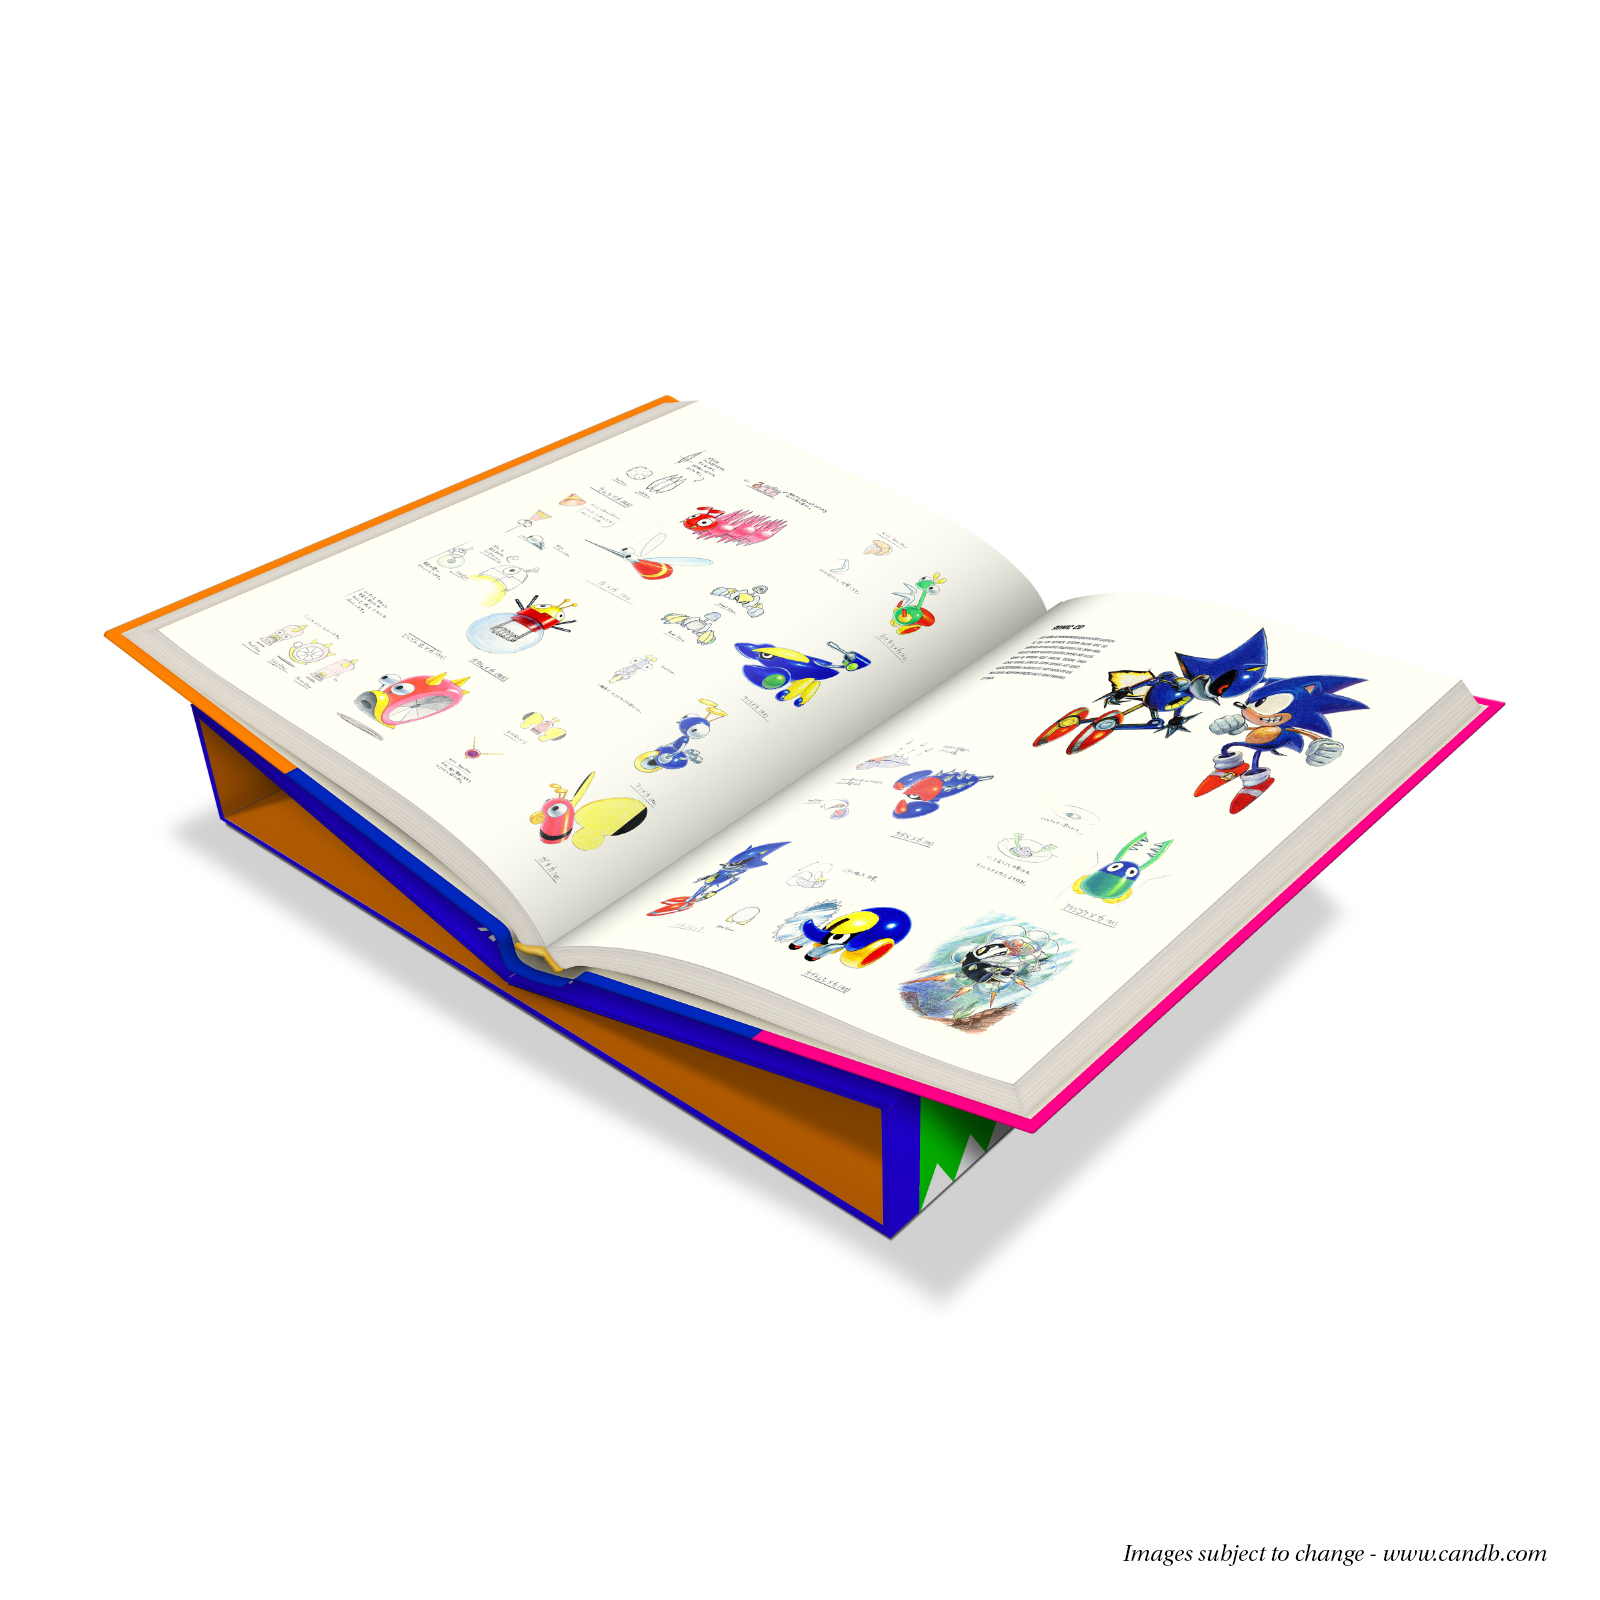 Fine Art: Sonic The Hedgehog’s Fancy Coffee Table Art Book